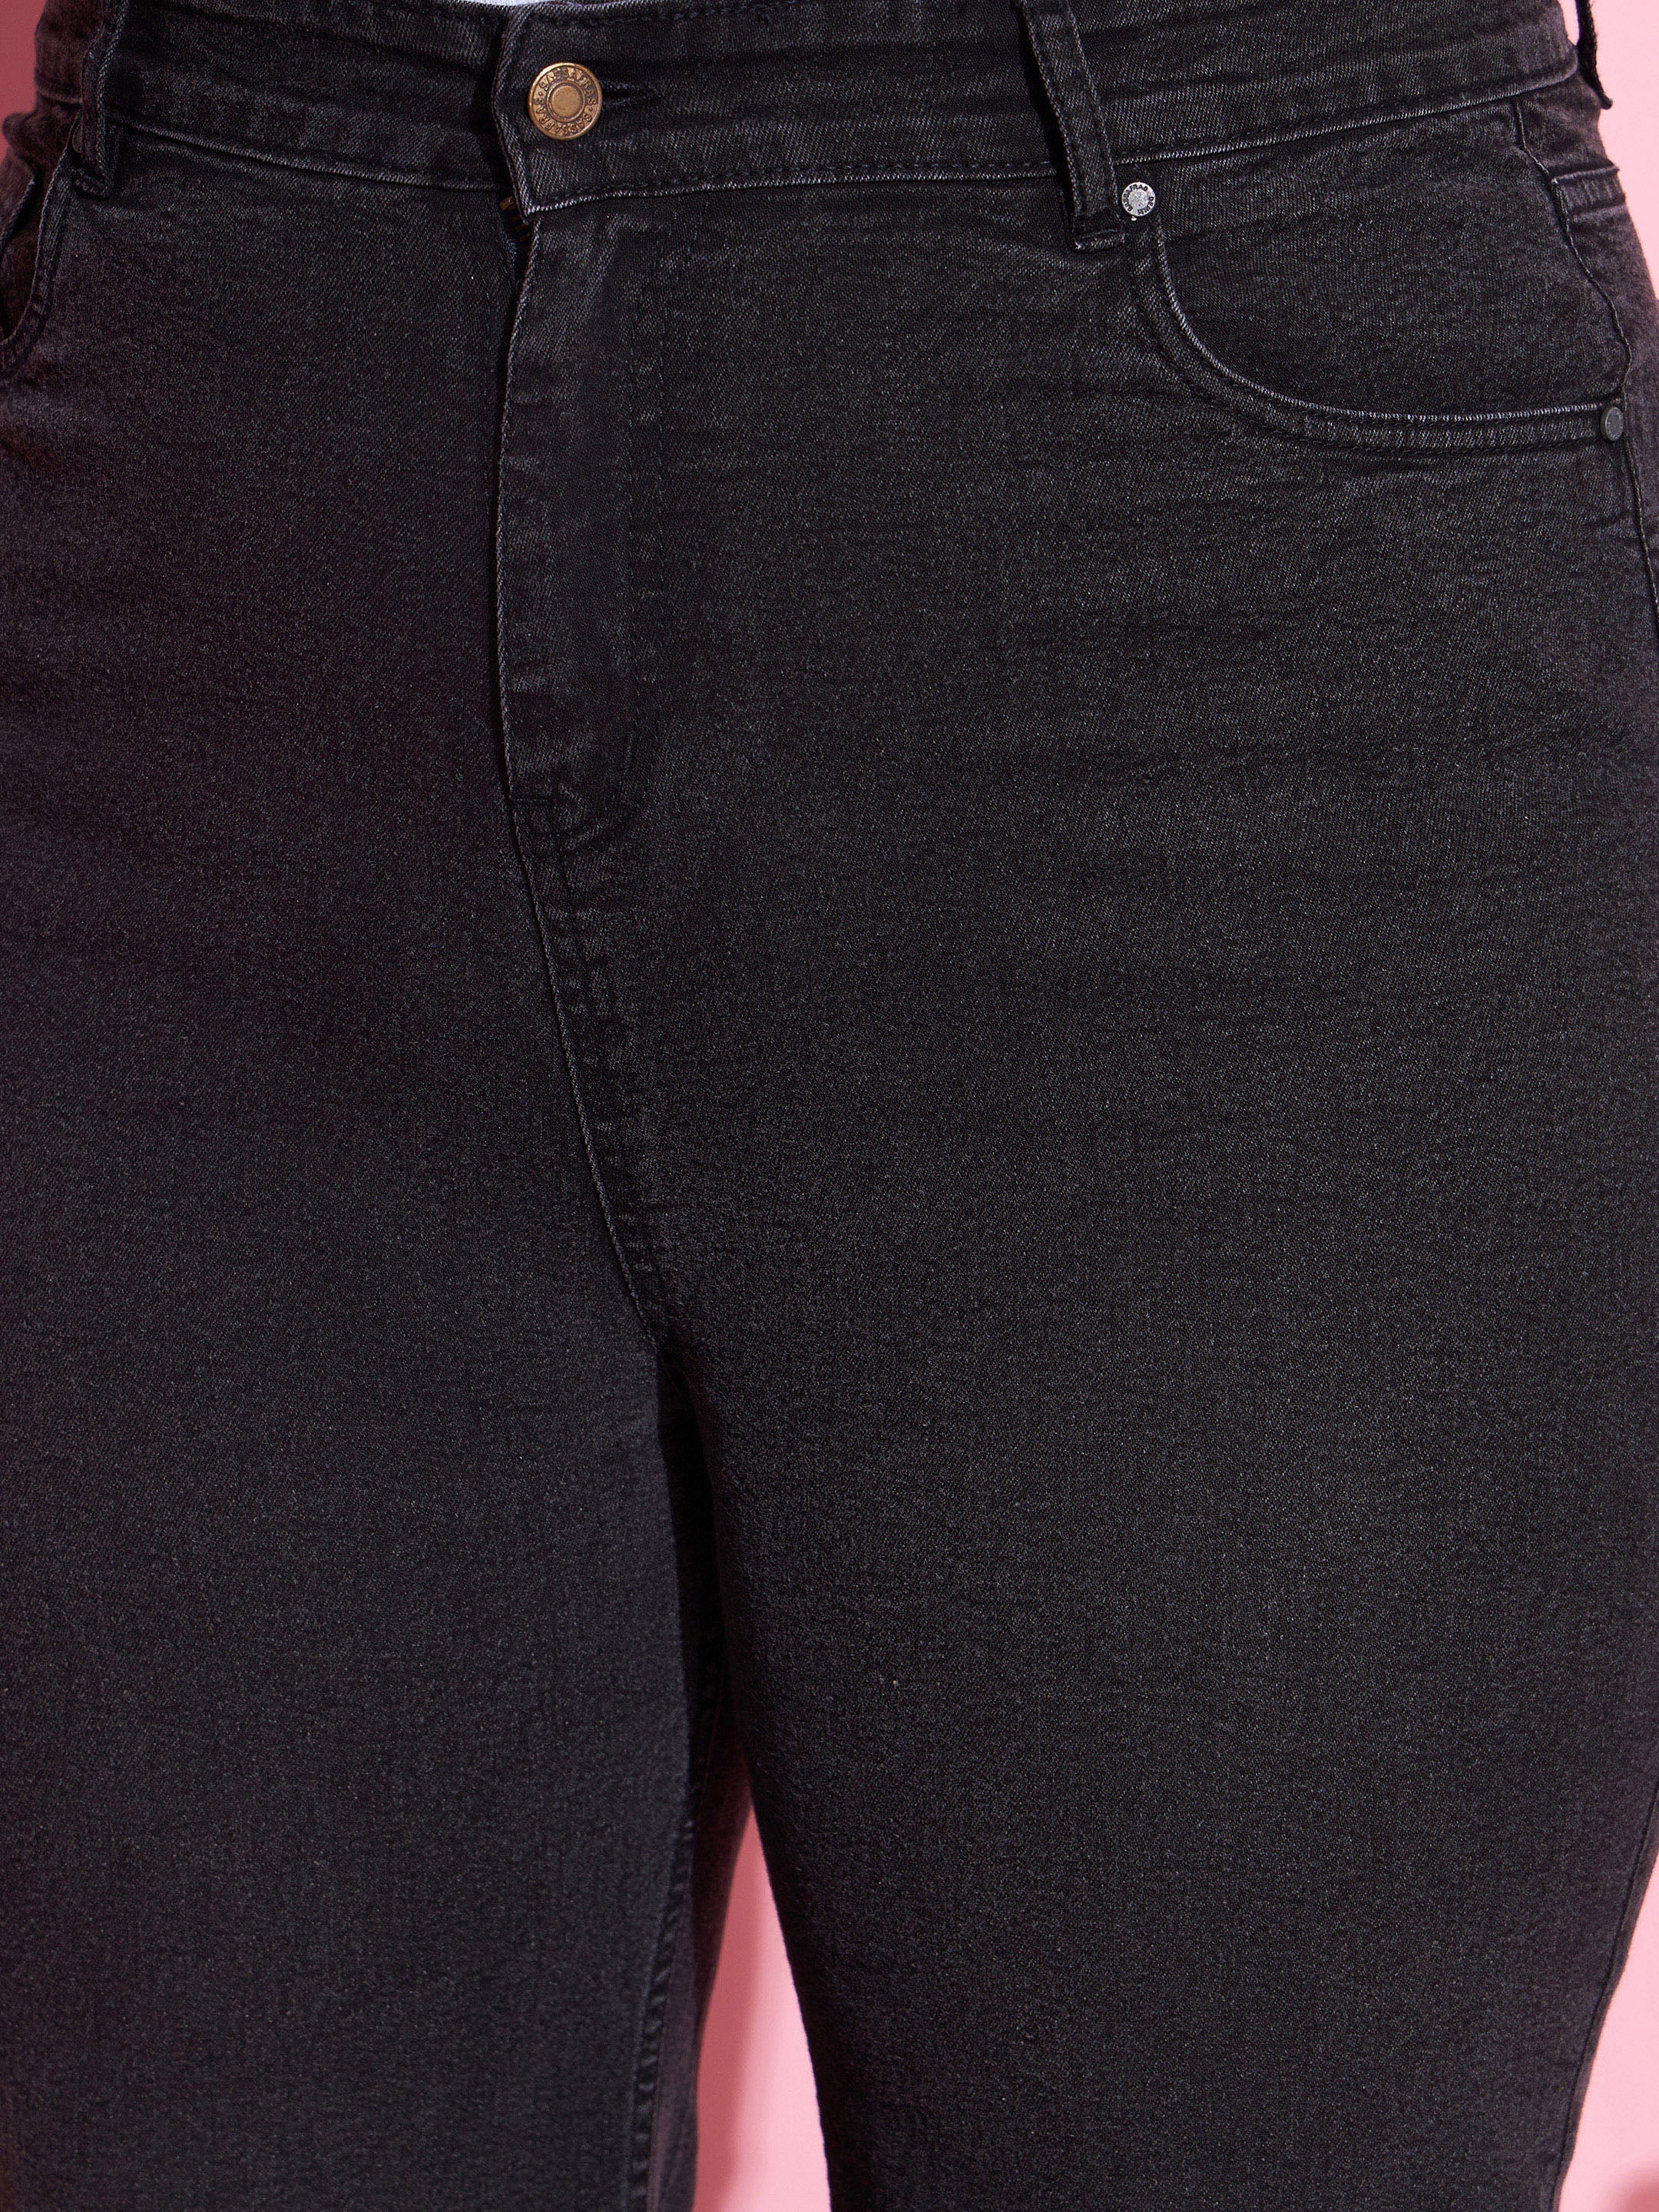 Women's Black Acid Wash Denim Straight Jeans - SASSAFRAS